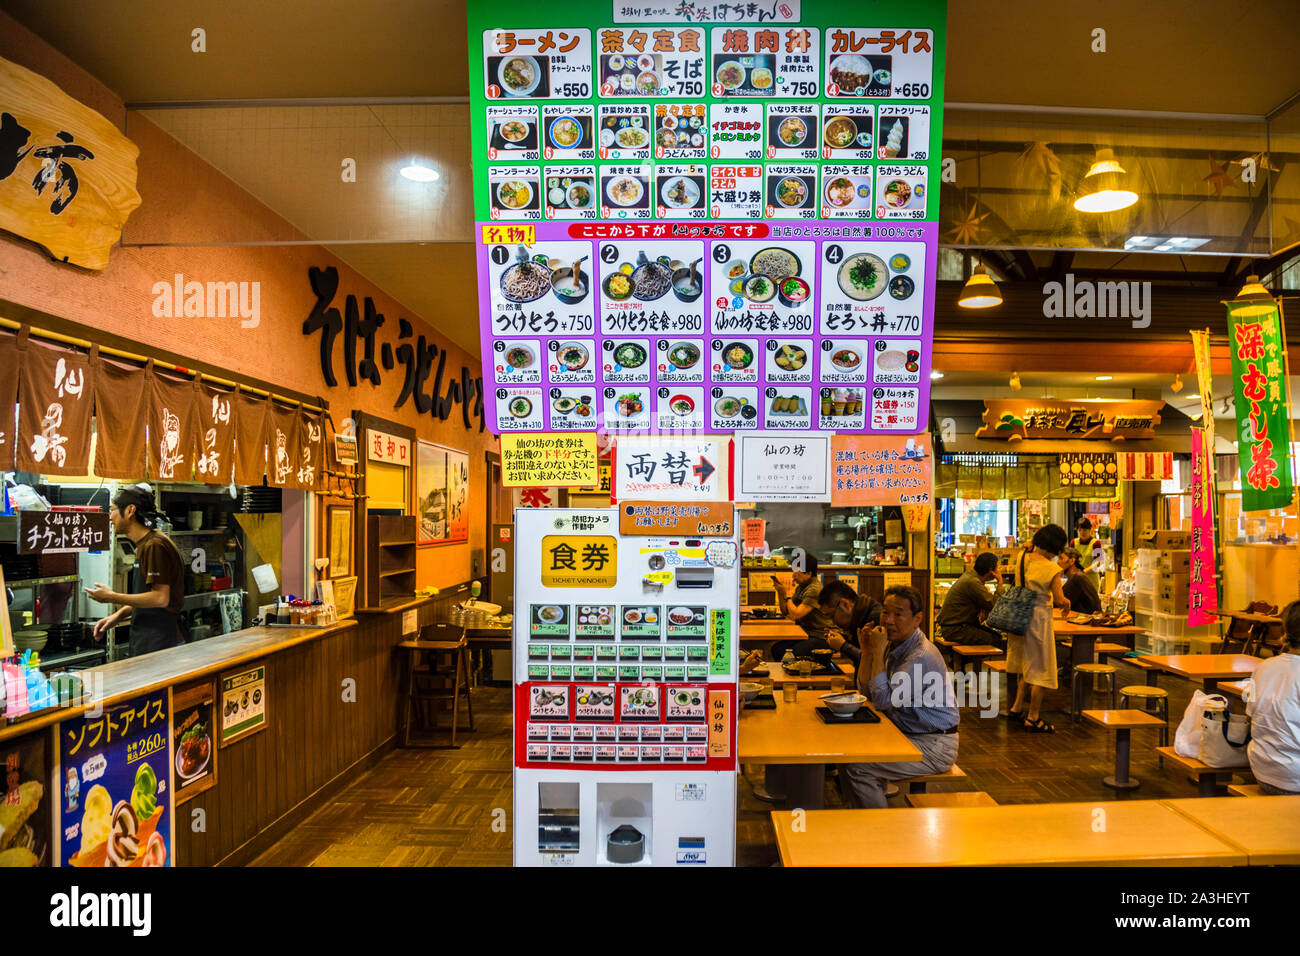 Impressionen Von Japan Fast Food Restaurants Stockfoto